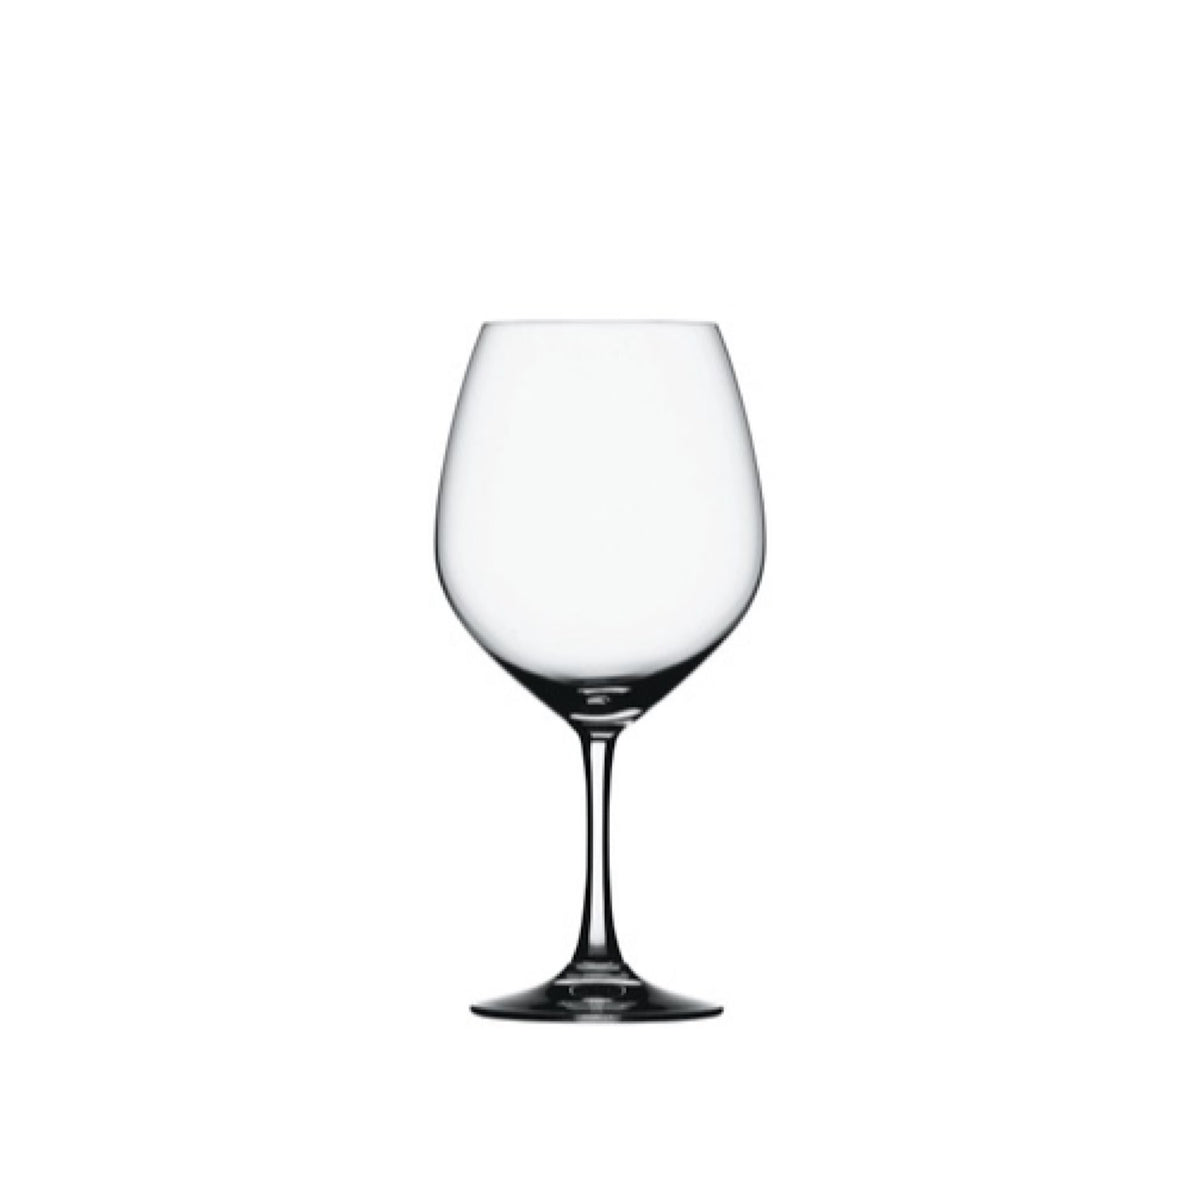 Vino Grande Burgundy Glasses, Set of 4